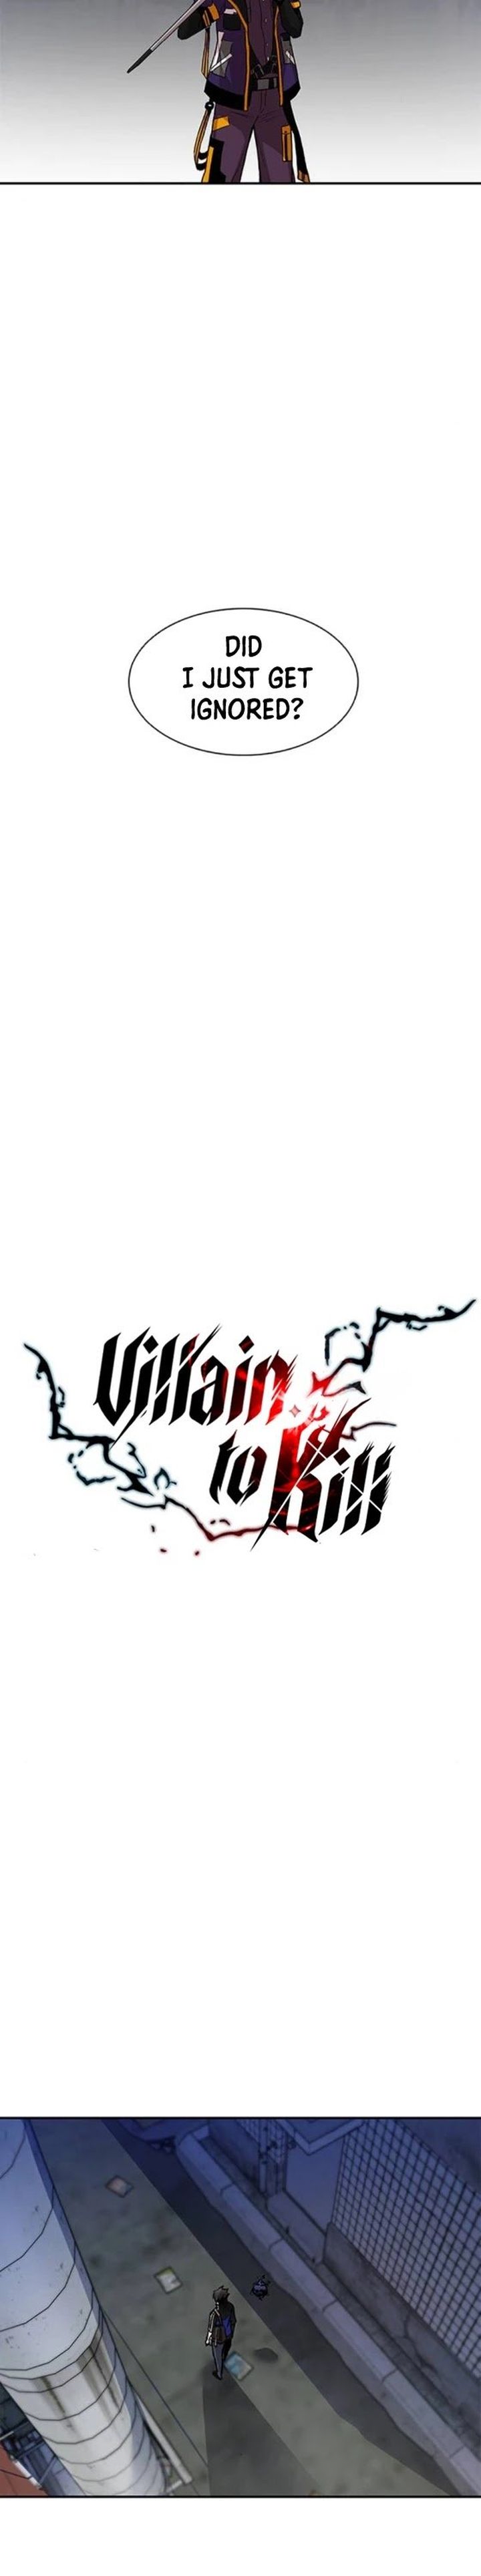 Villain To Kill 11 10